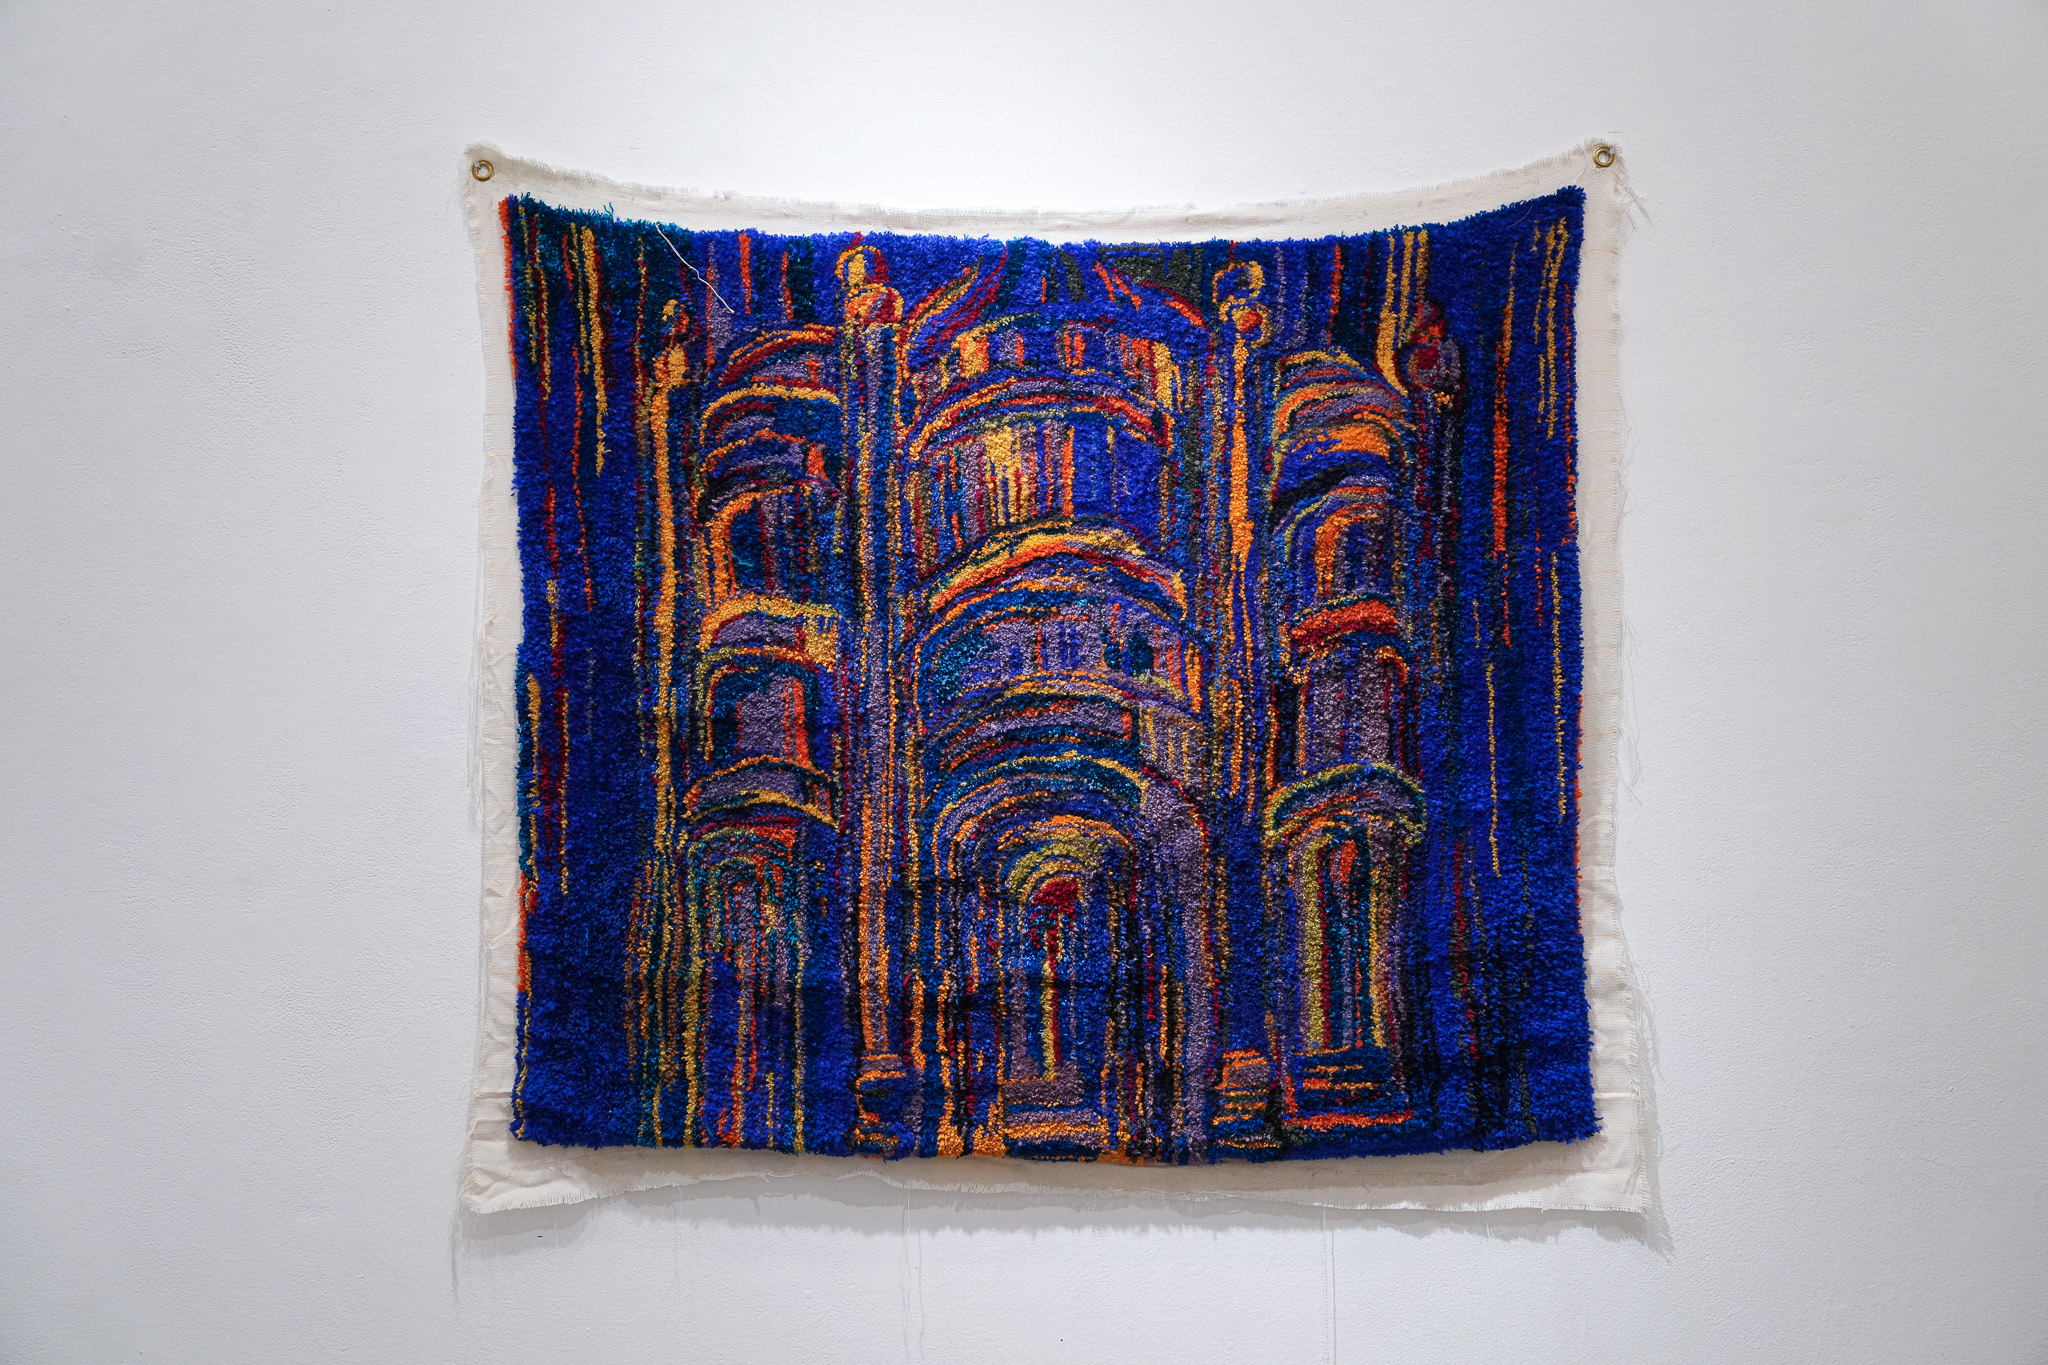 Qian Yang, Yarn on canvas, Yarn Artwork, Tufting Art